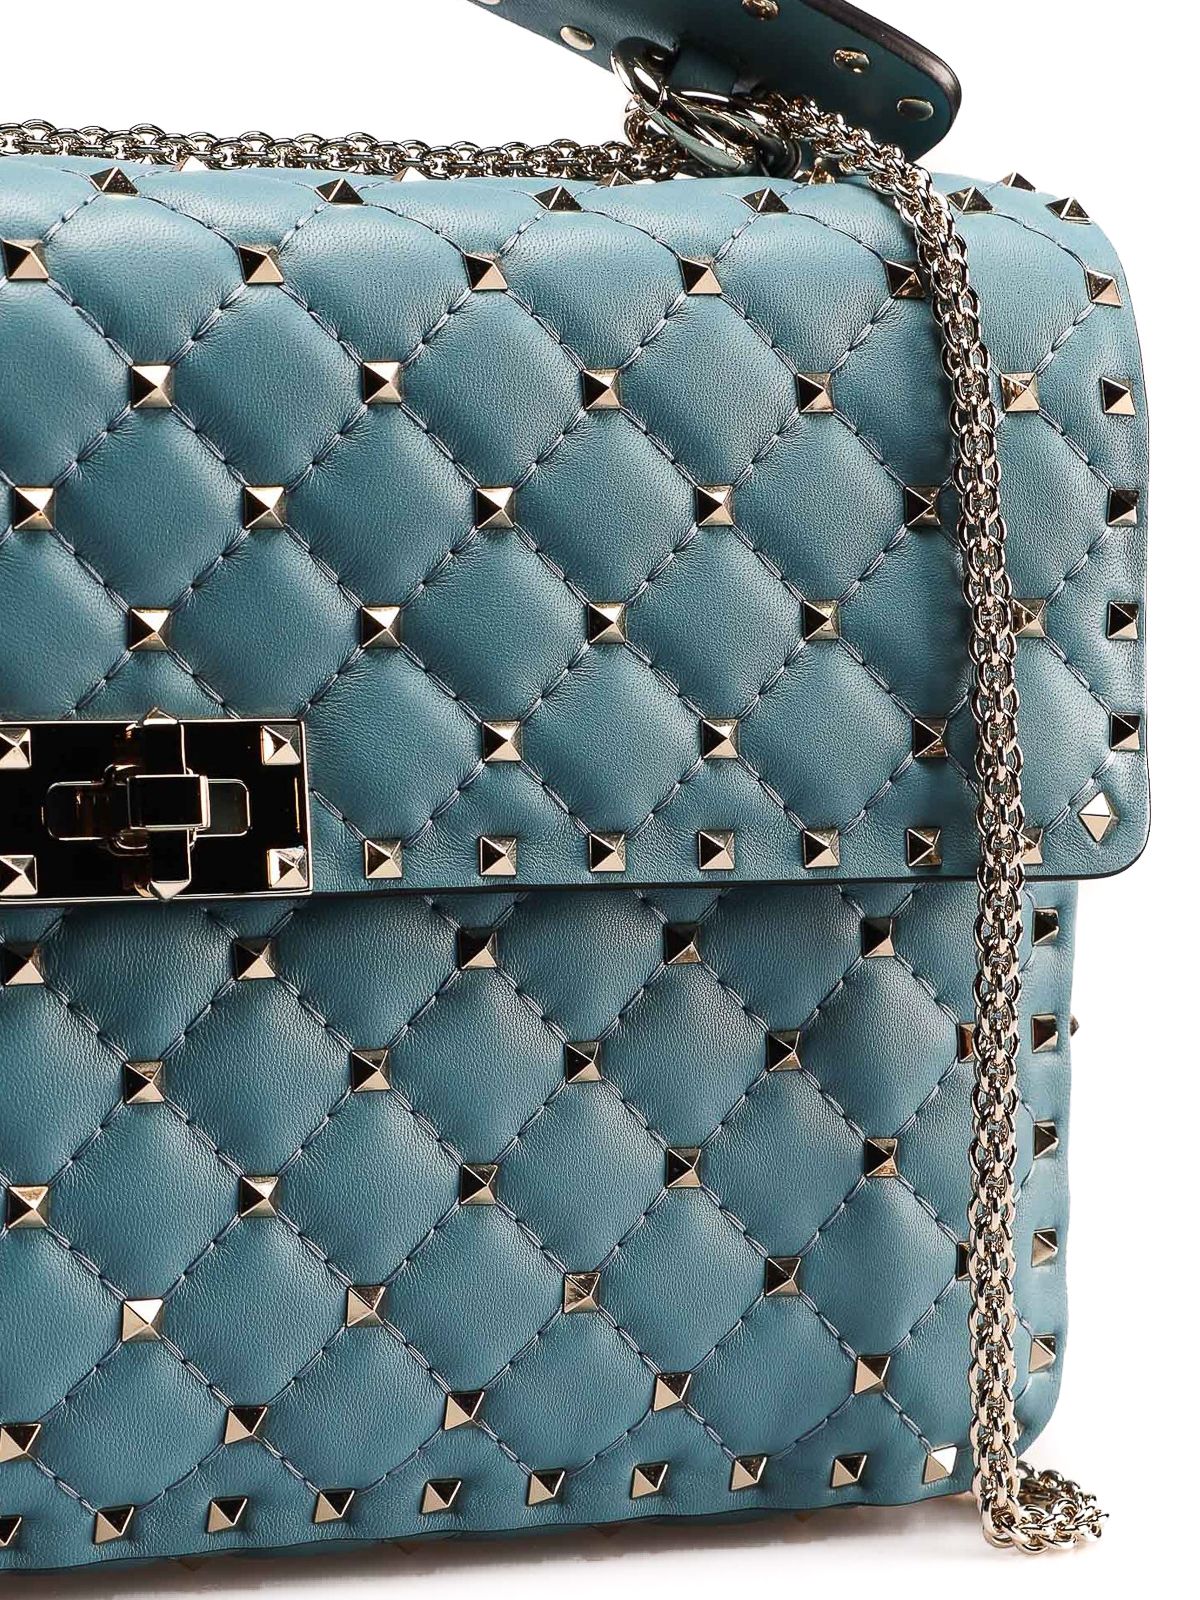 Shoulder bags Valentino Garavani - Rockstud L light blue bag - RW0B0121NAPPI4